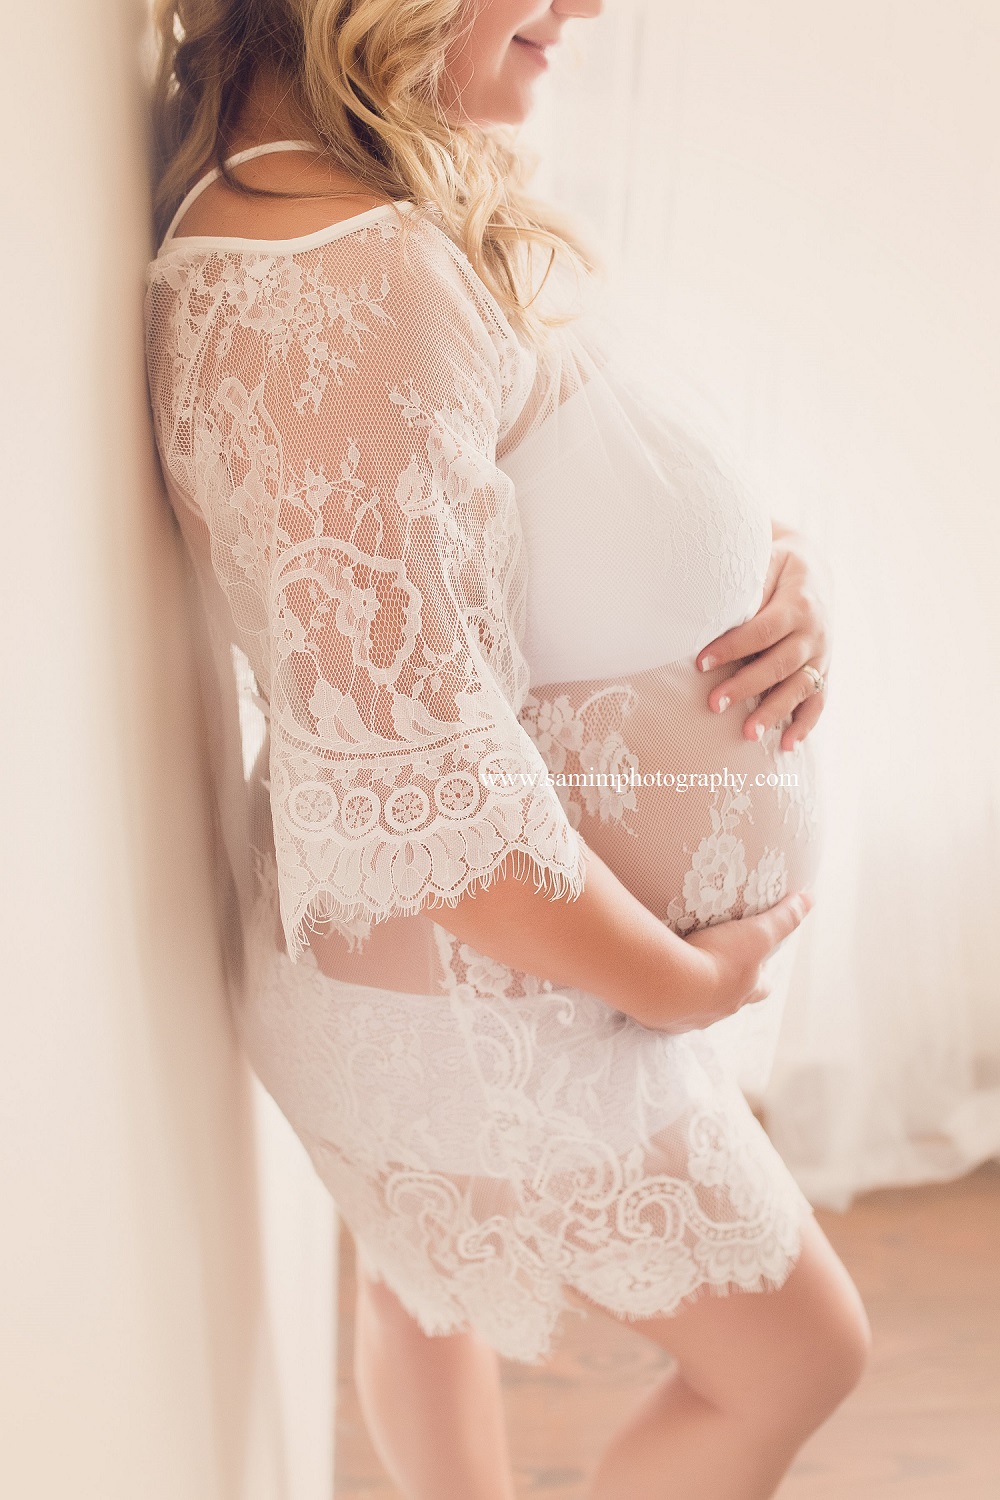 Ashburn Ga photographer Studio Boudoir Maternity